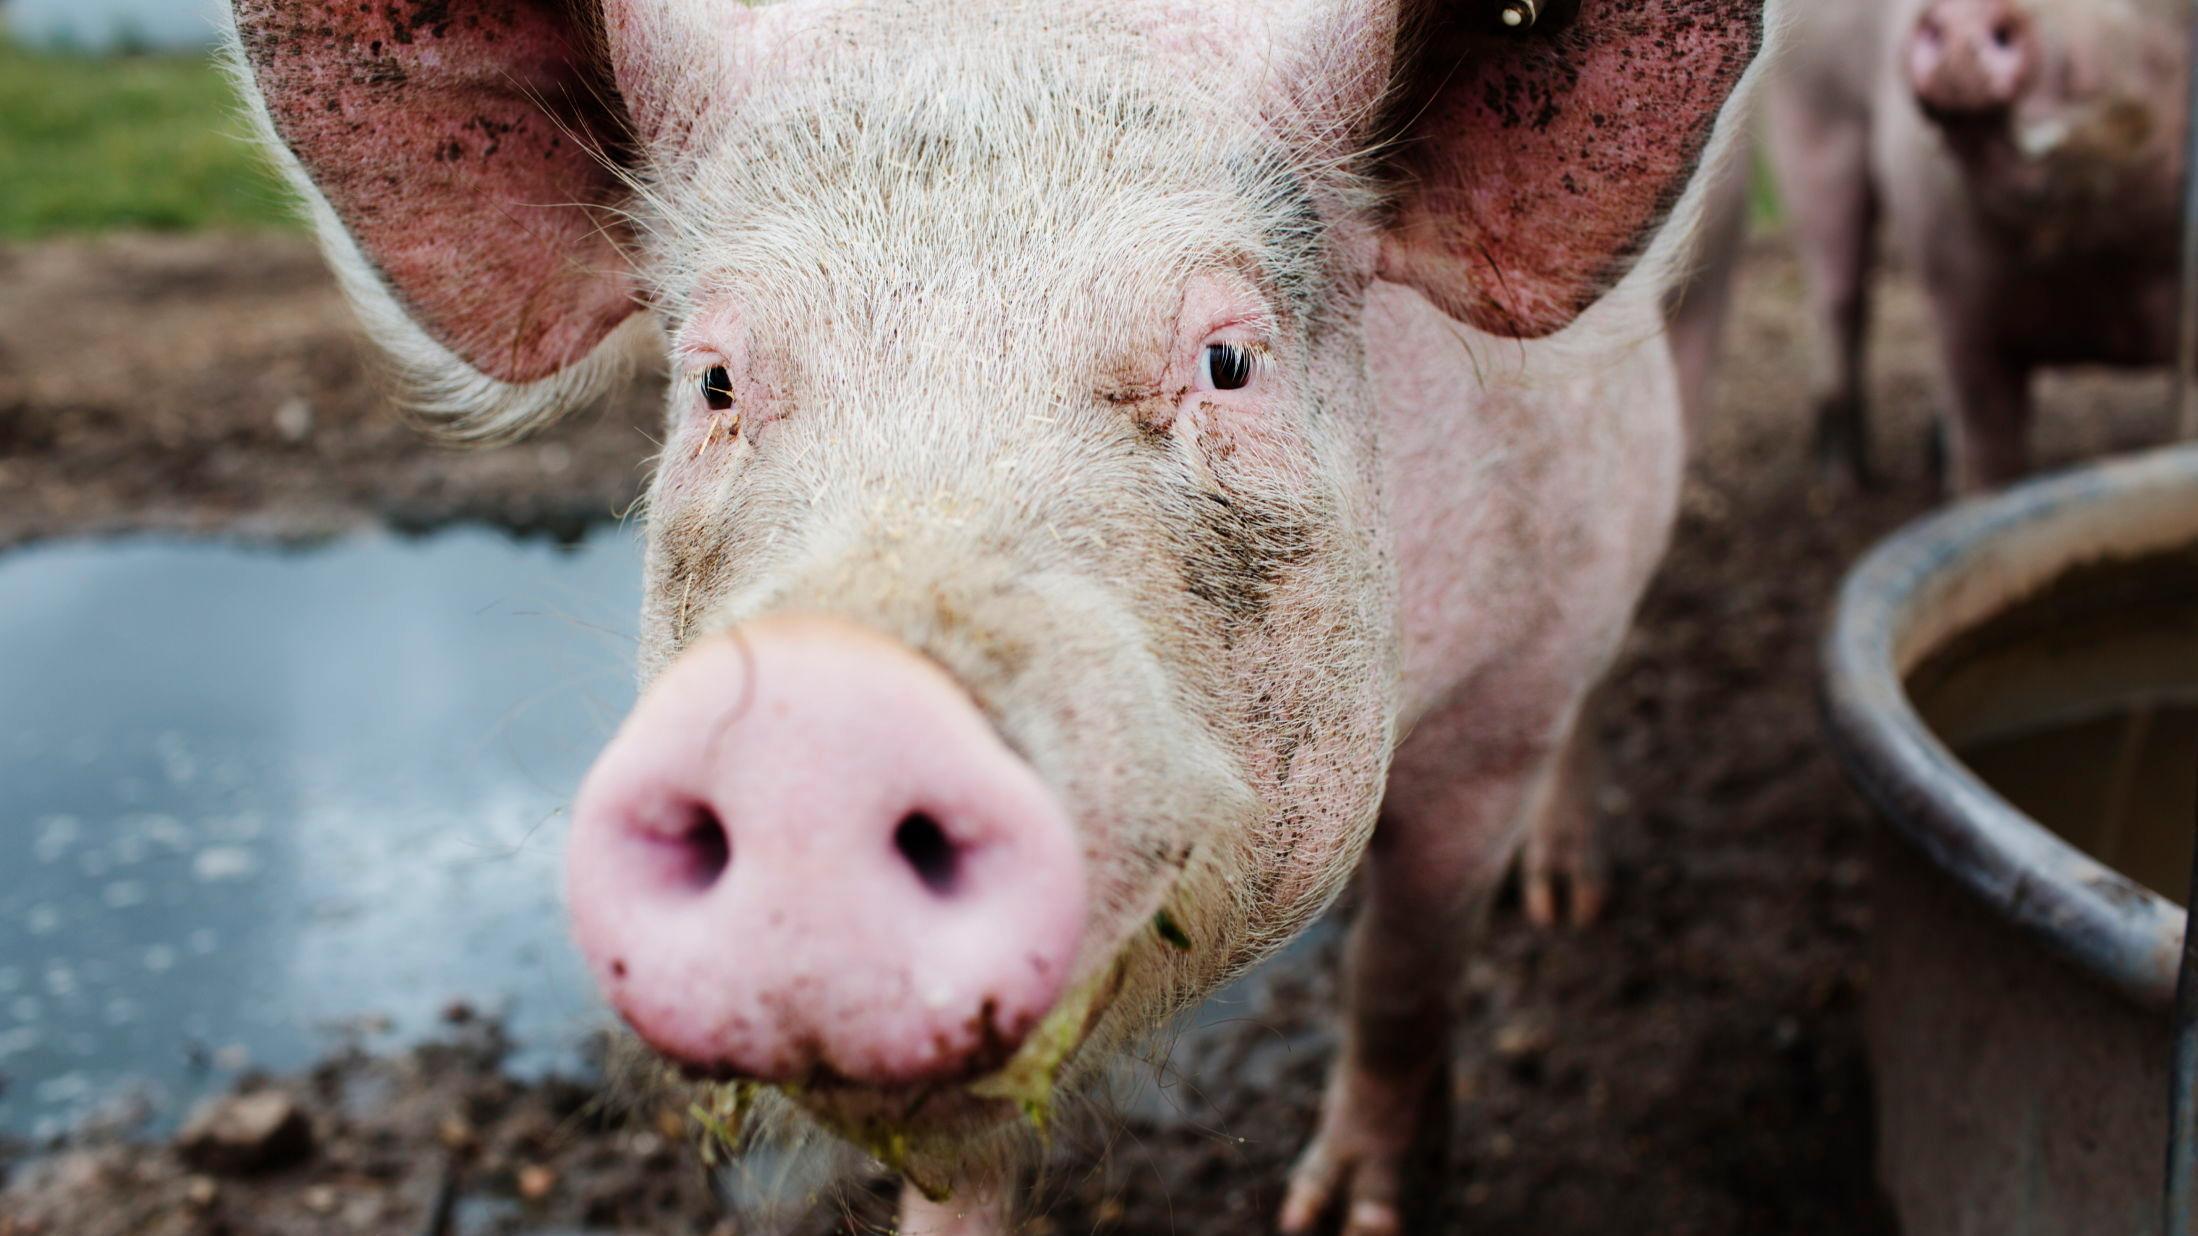 VEGANUAR: Hittil har 22.000 personer verden rundt, meldt seg på en kjøttfri januar til hensyn for miljøet, helsen og dyrene. Foto: Andrea gjestvang/VG